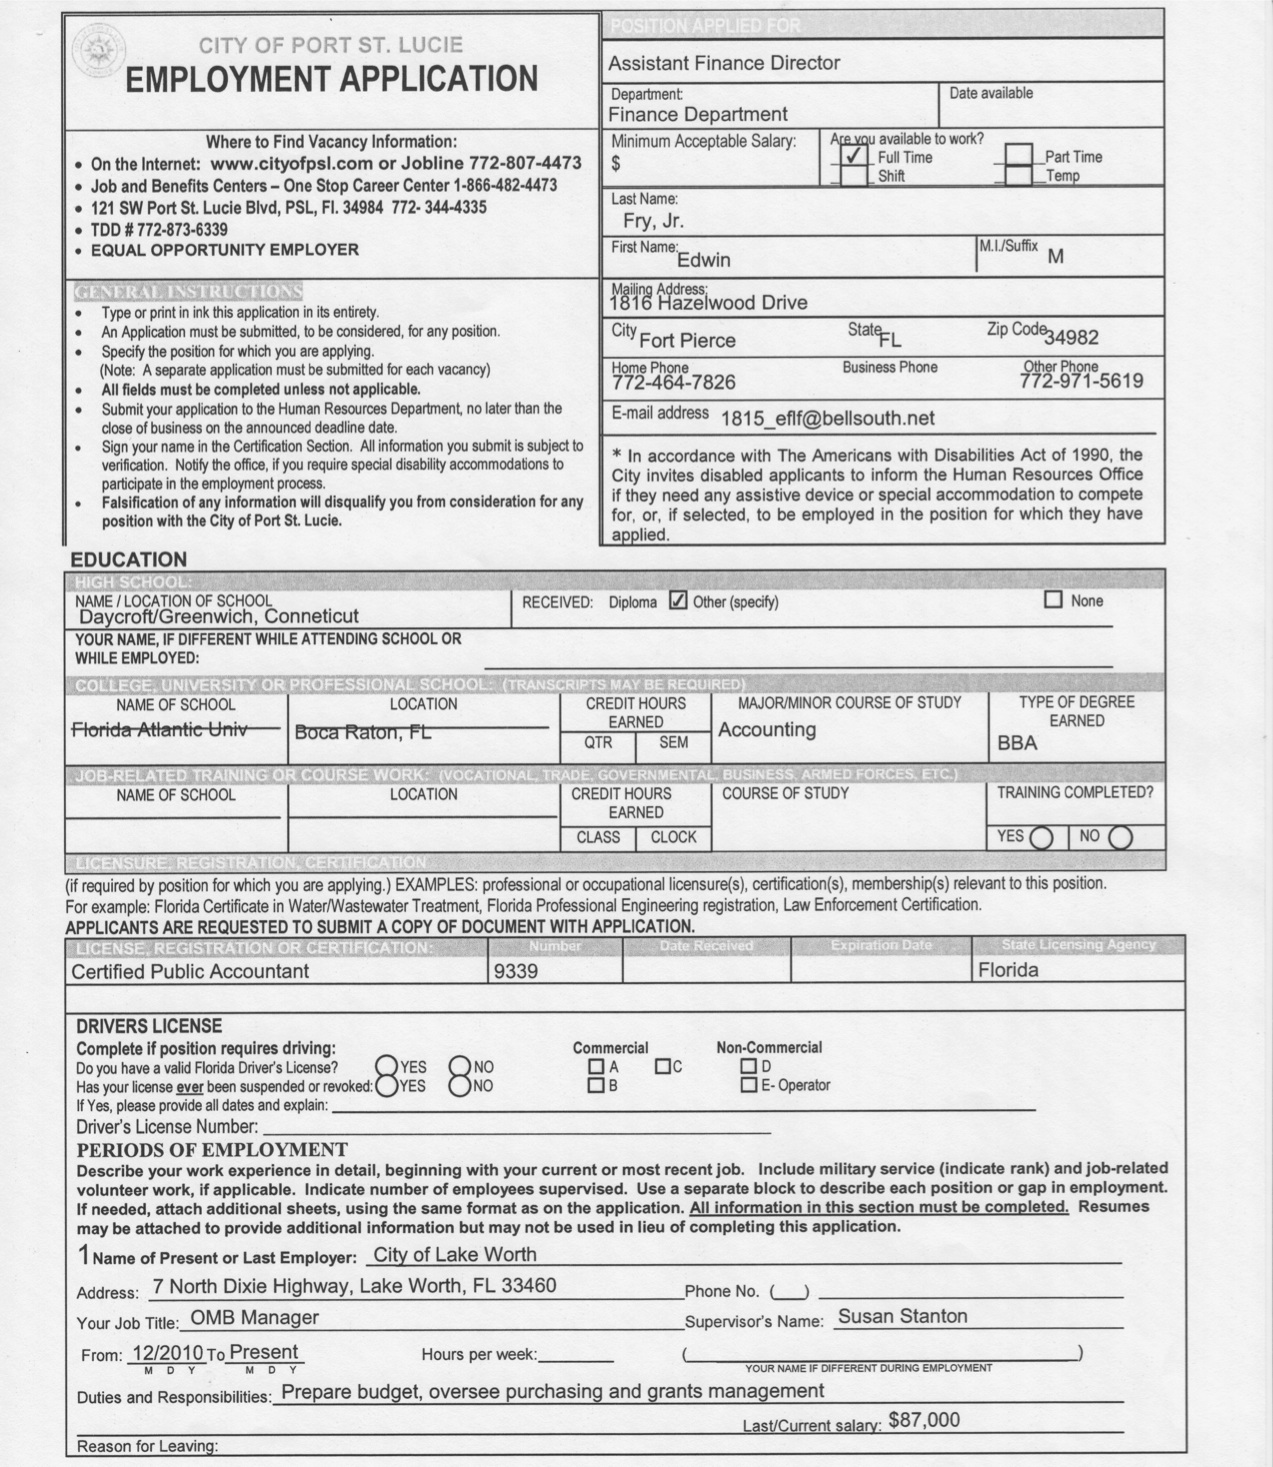 Copy of Job Application Form